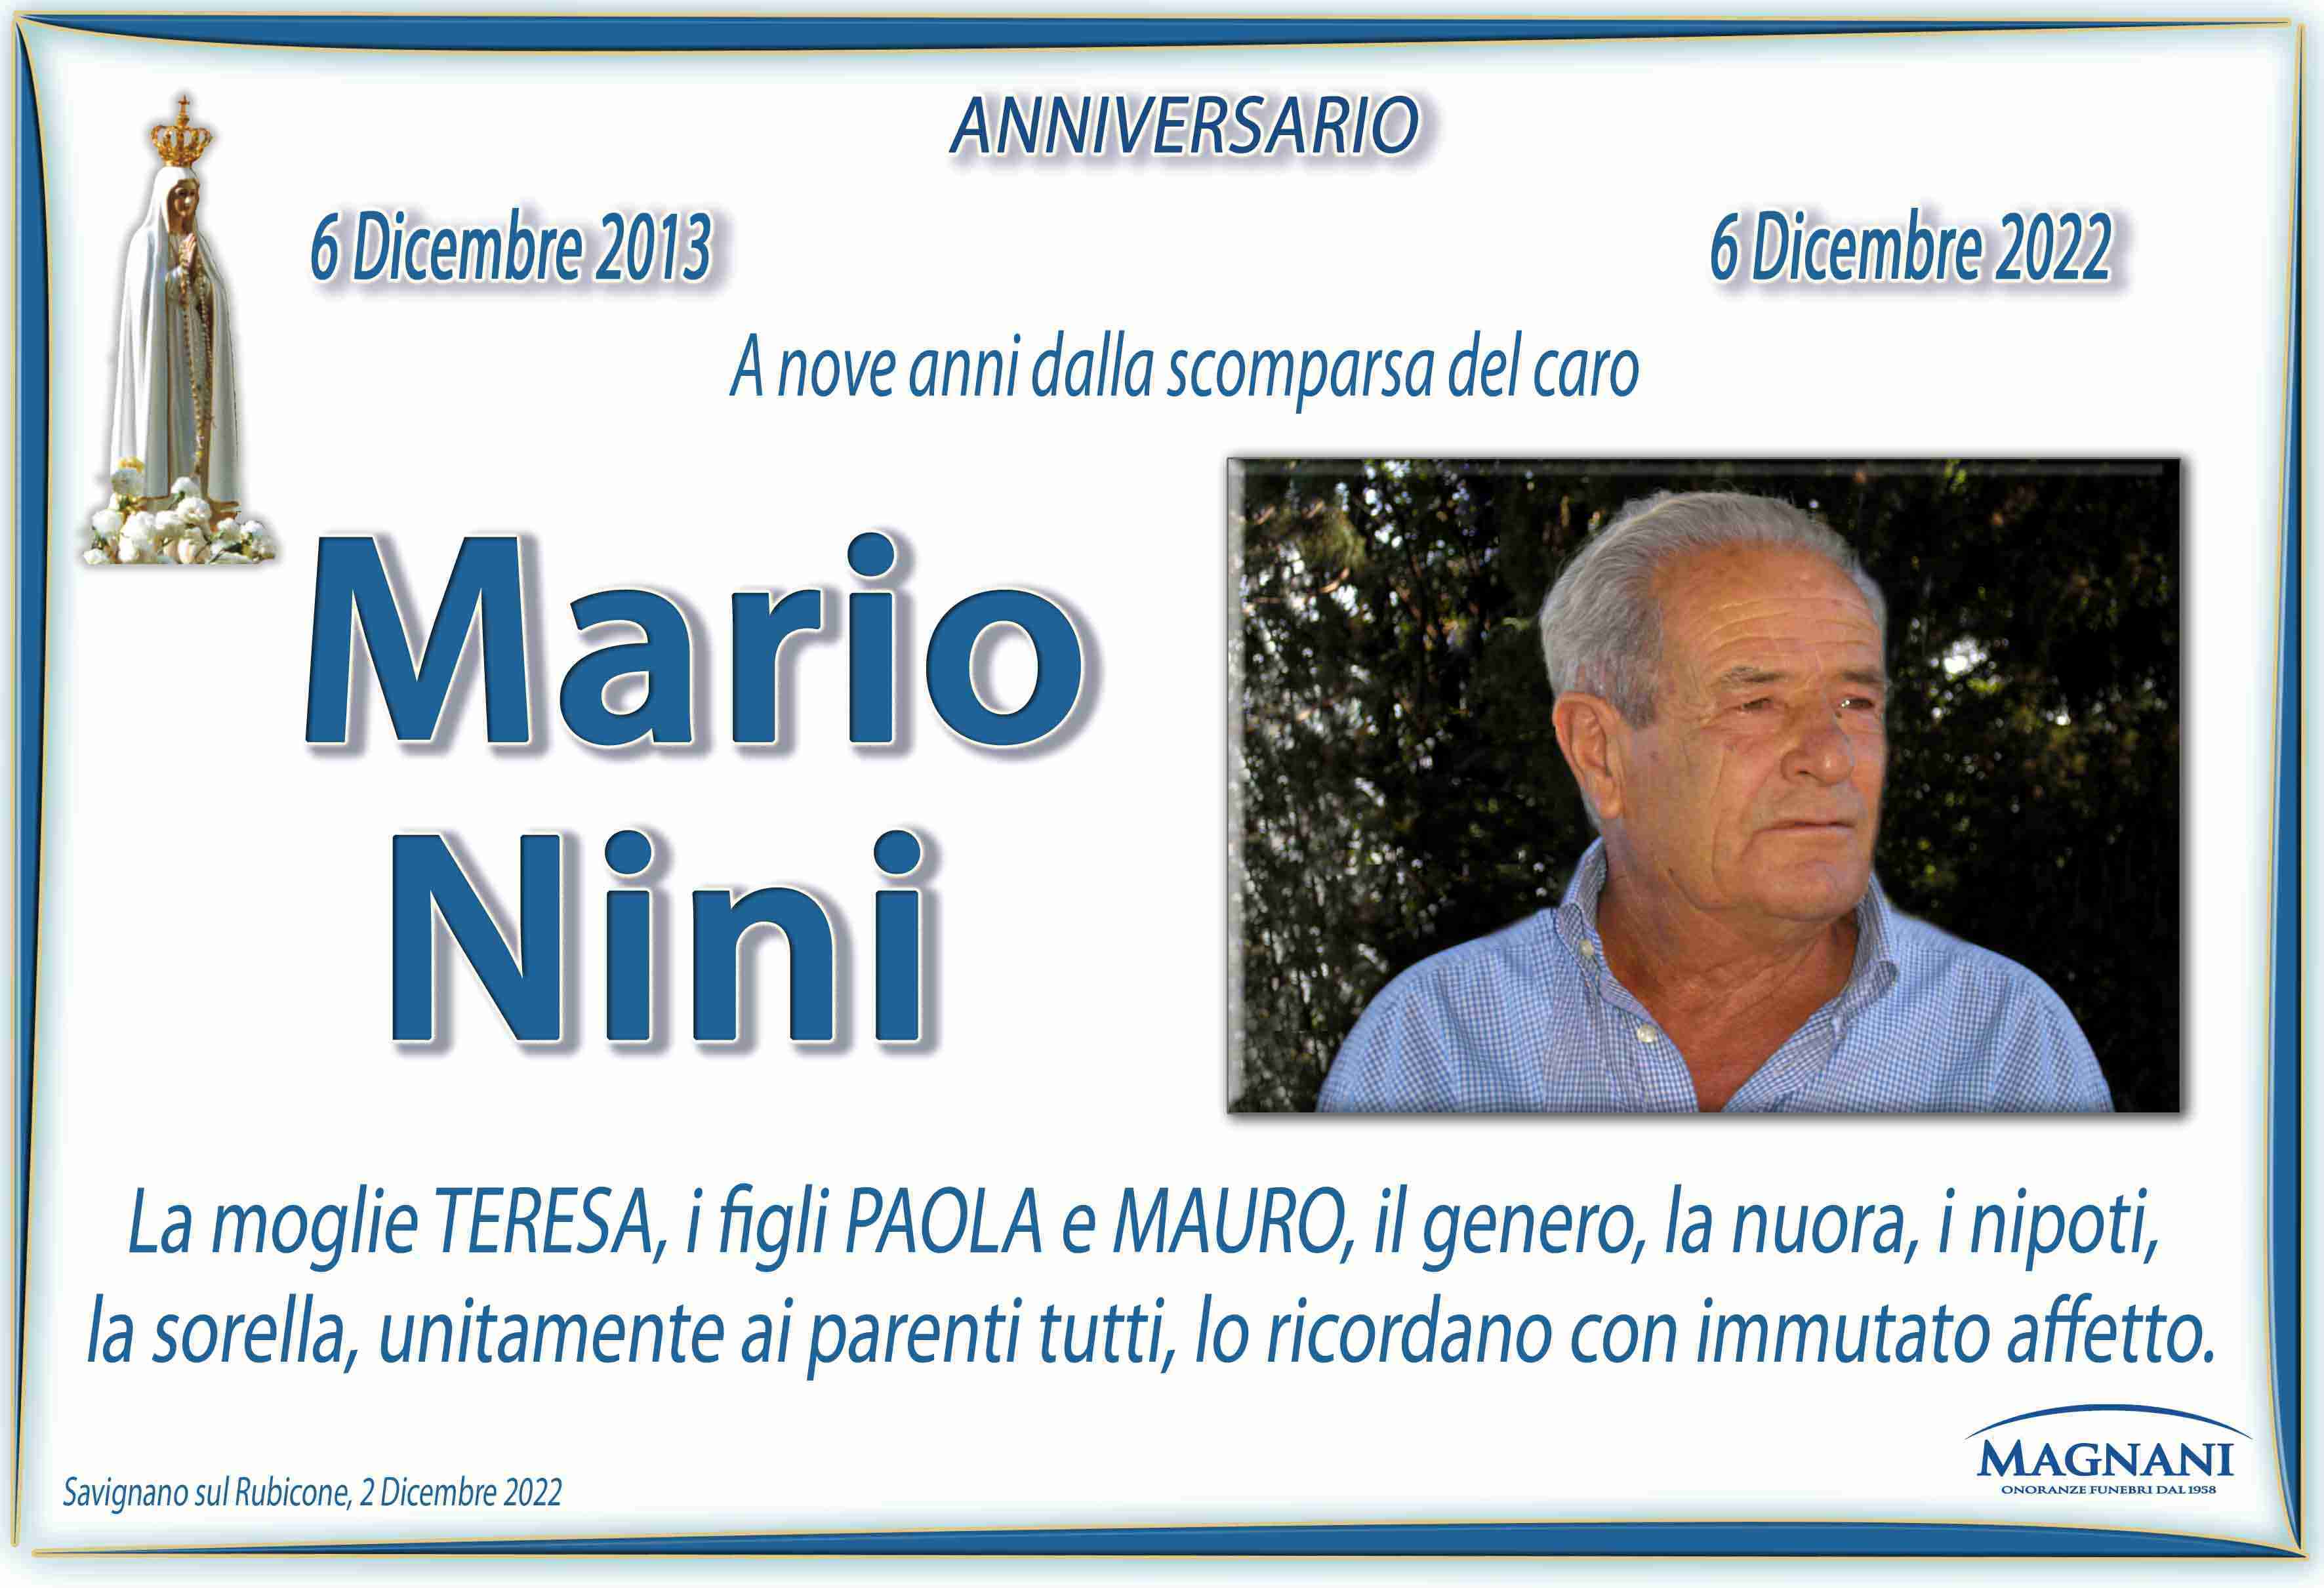 Mario Nini